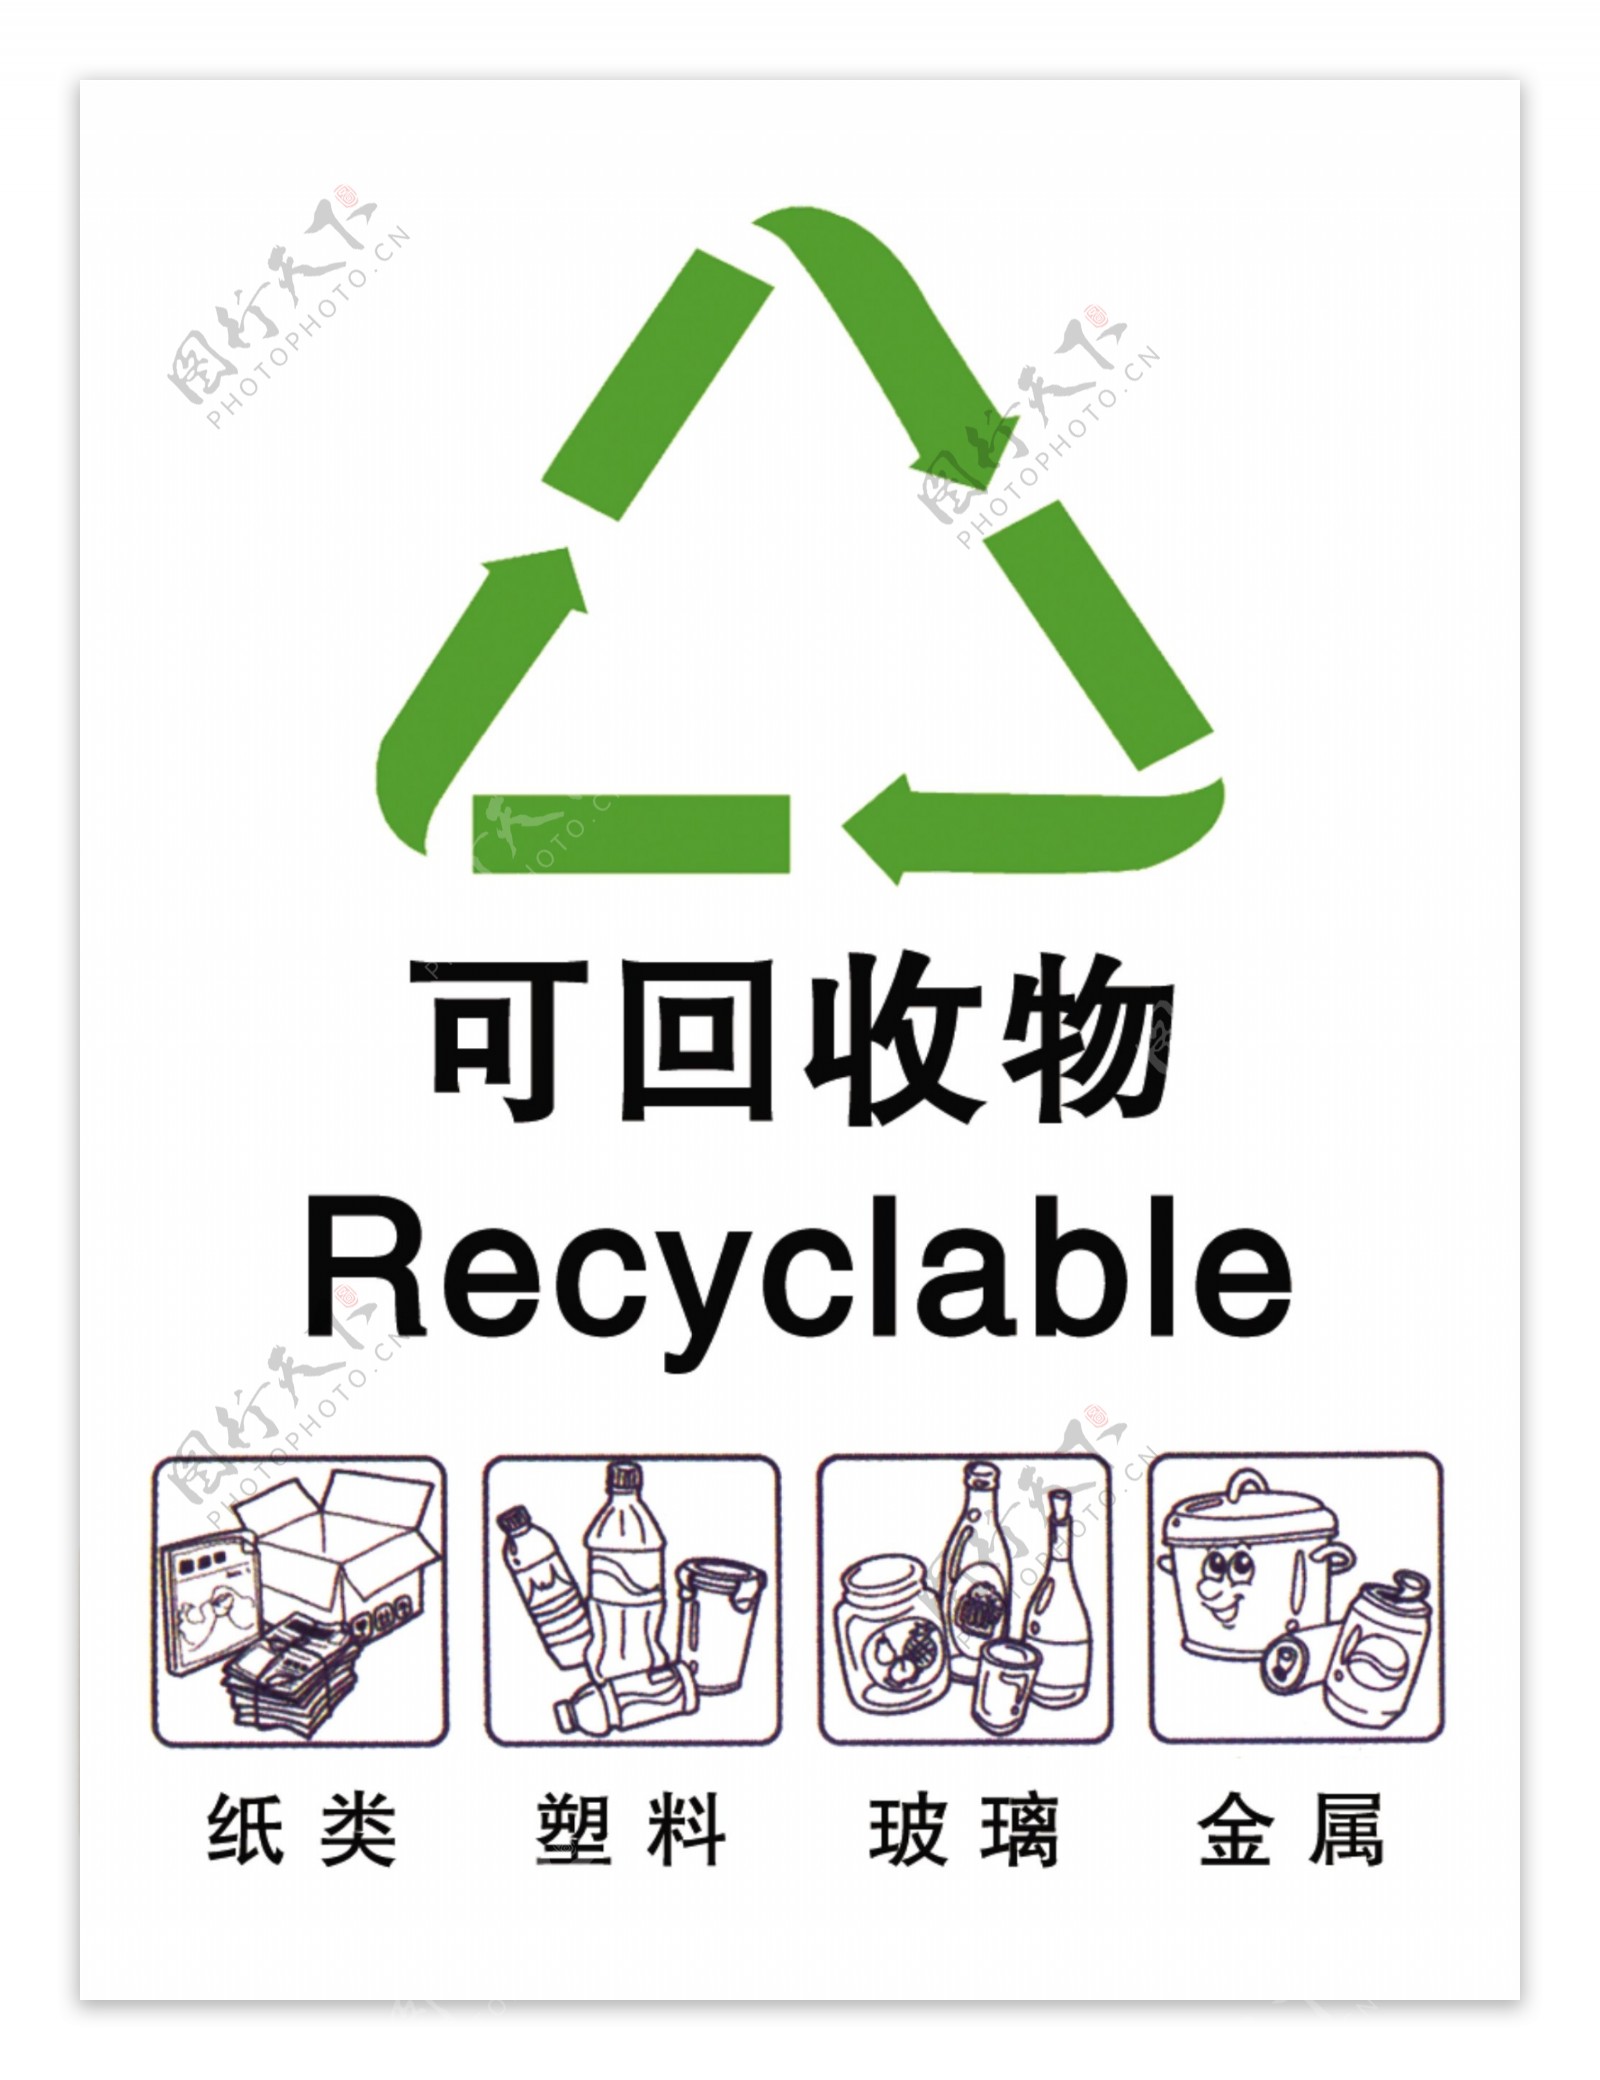 垃圾分类可回收物